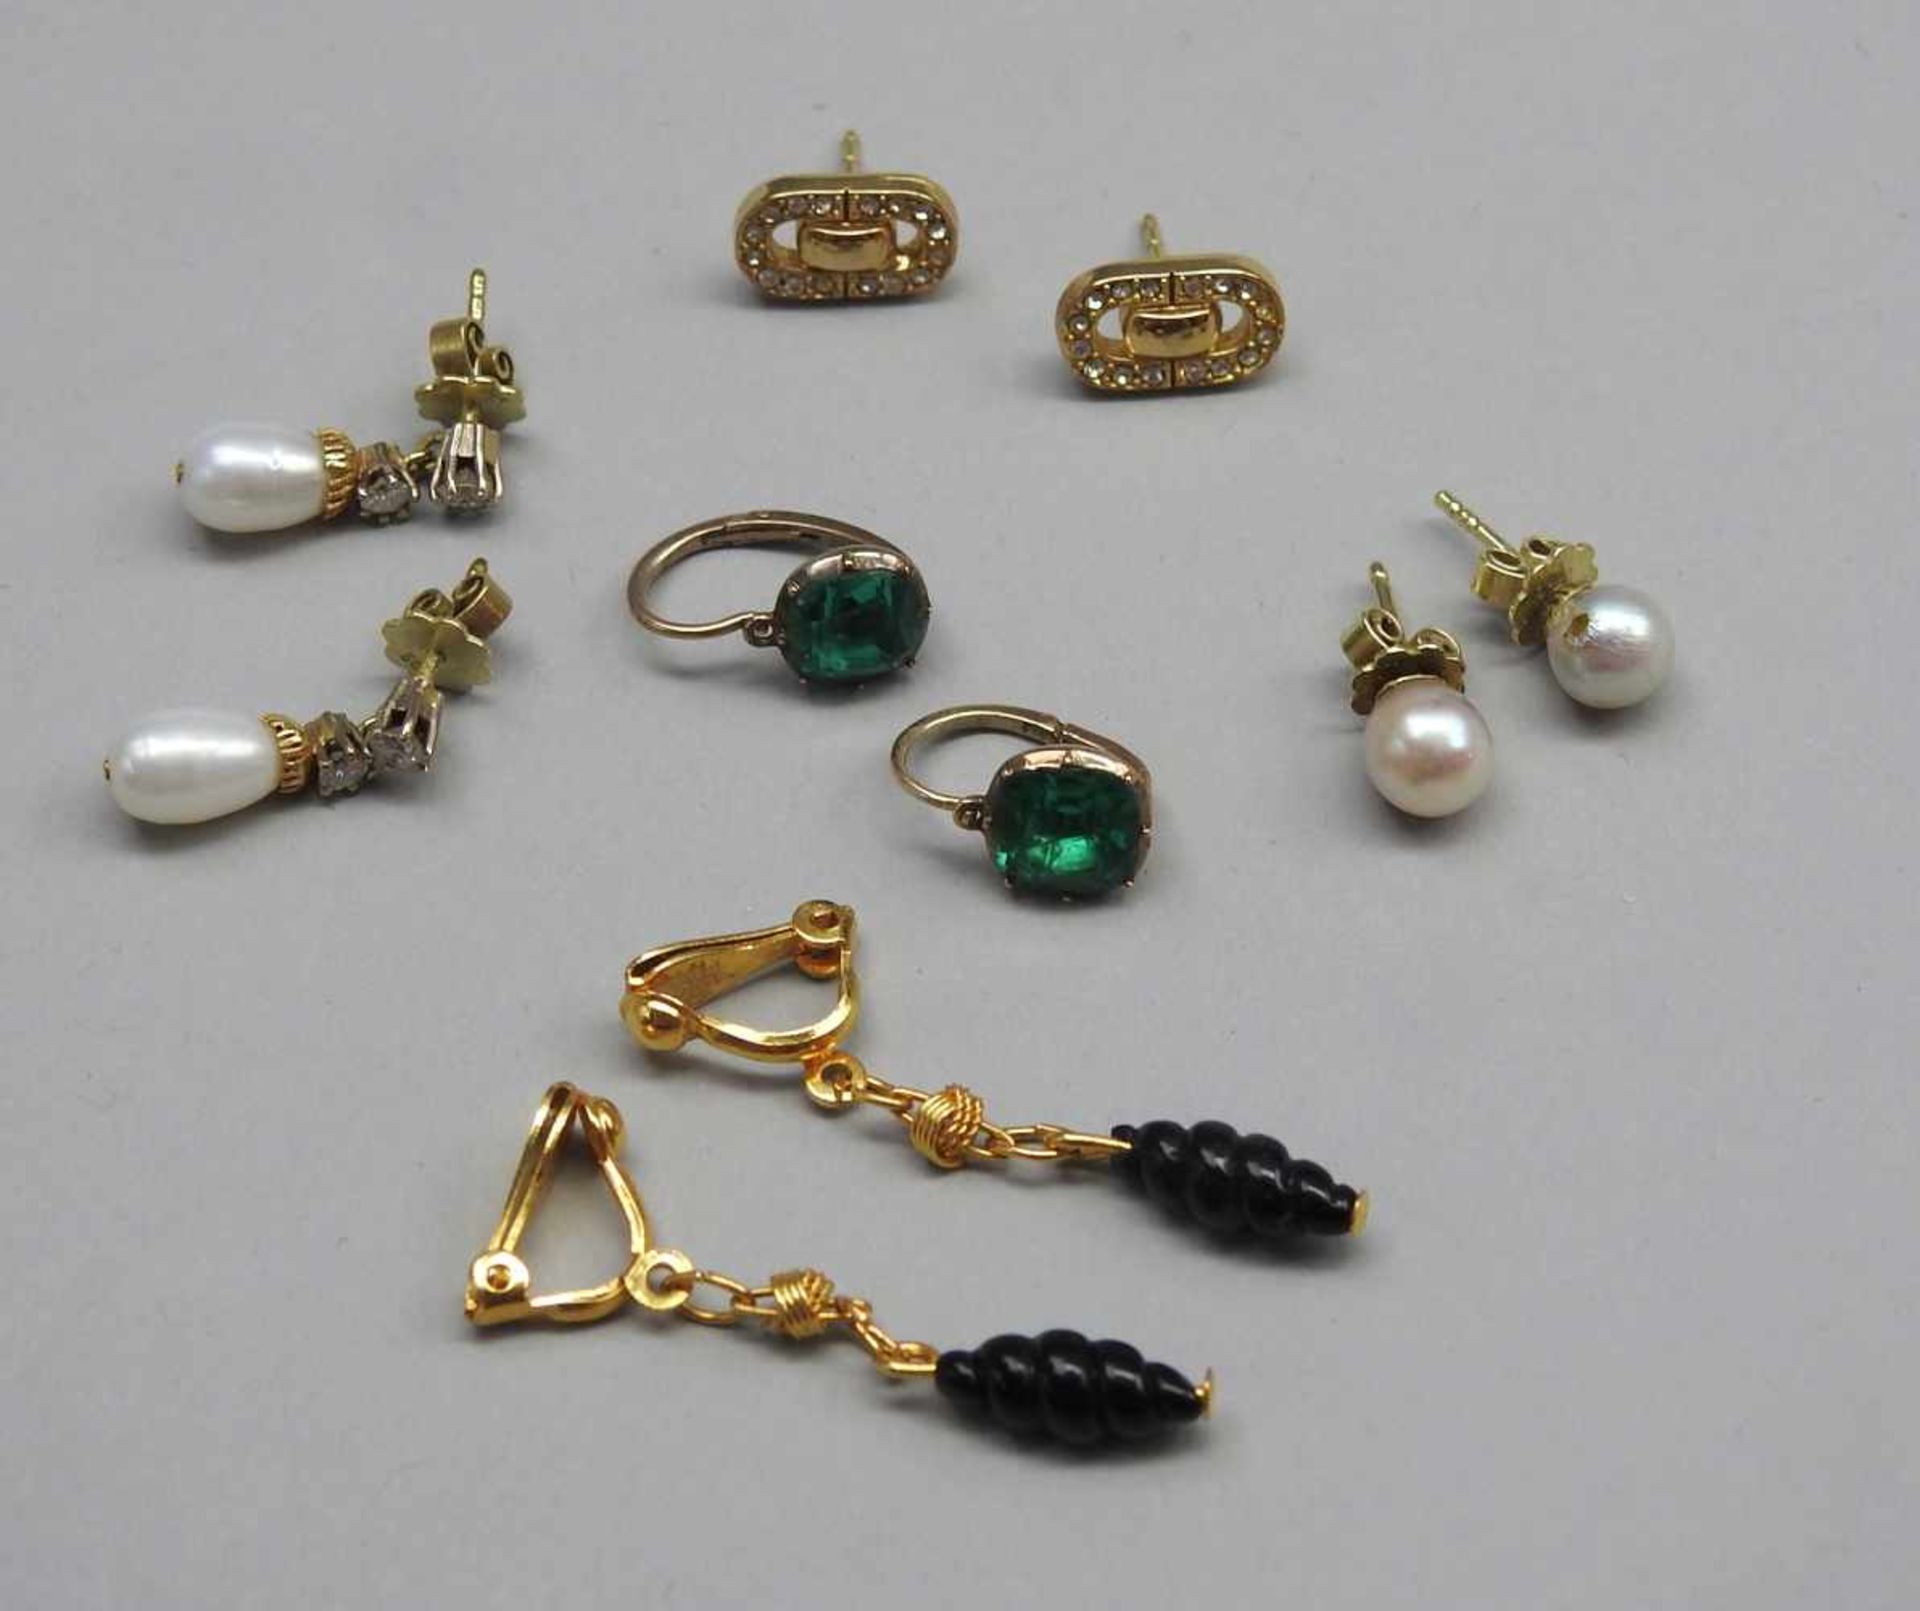 Fünf Paar Ohrringe14 K. Gelbgold mit Diamanten, Perlen und Saphiren. Konvolut von fünf Paar